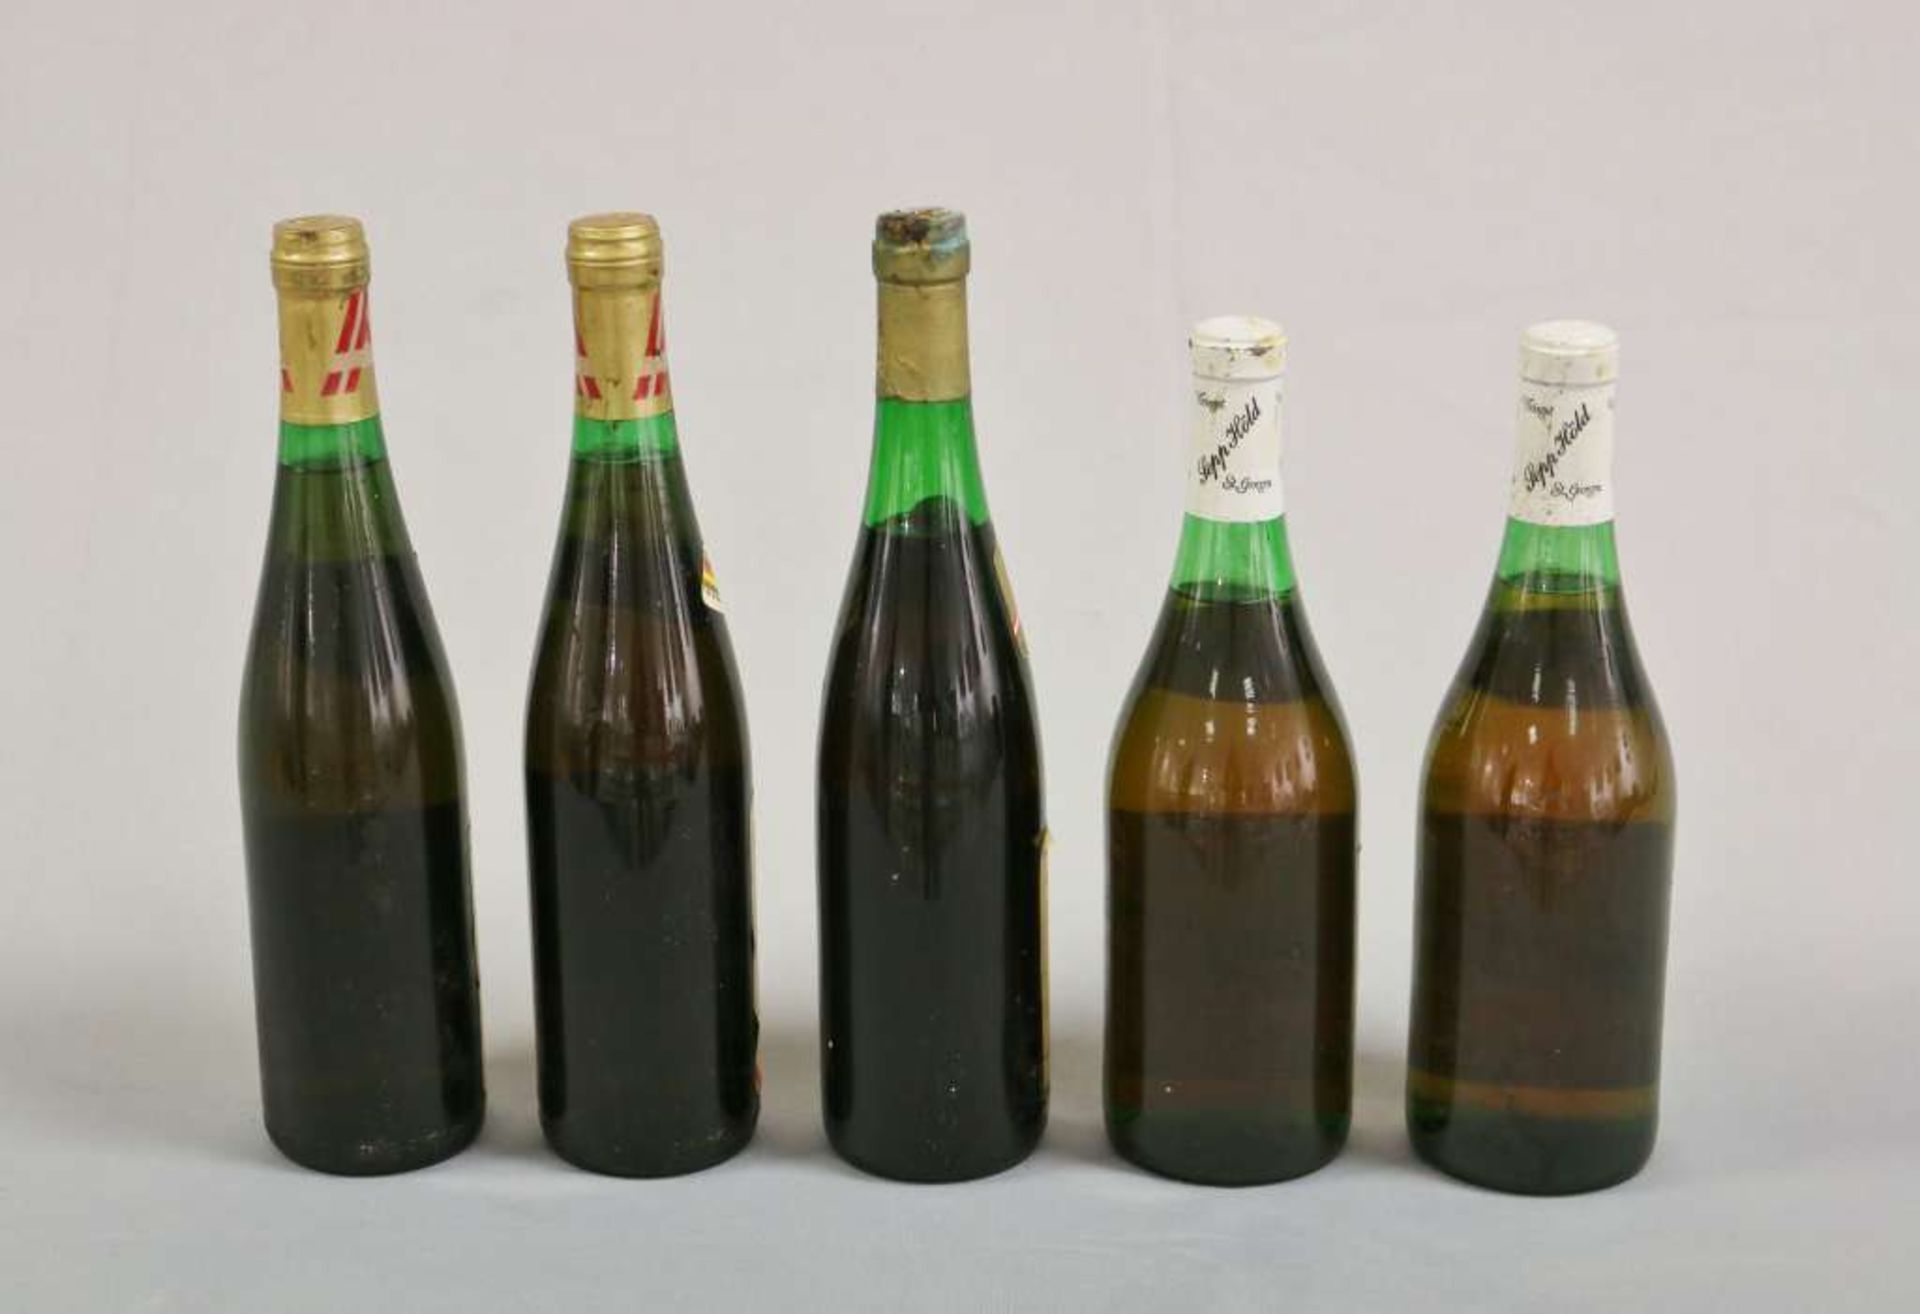 Weißwein u. Süßwein, Österreich, 5 Flaschen: Muskat Ottonel, 50 Jahre Burgenland, Weingut Gassner - Bild 2 aus 2